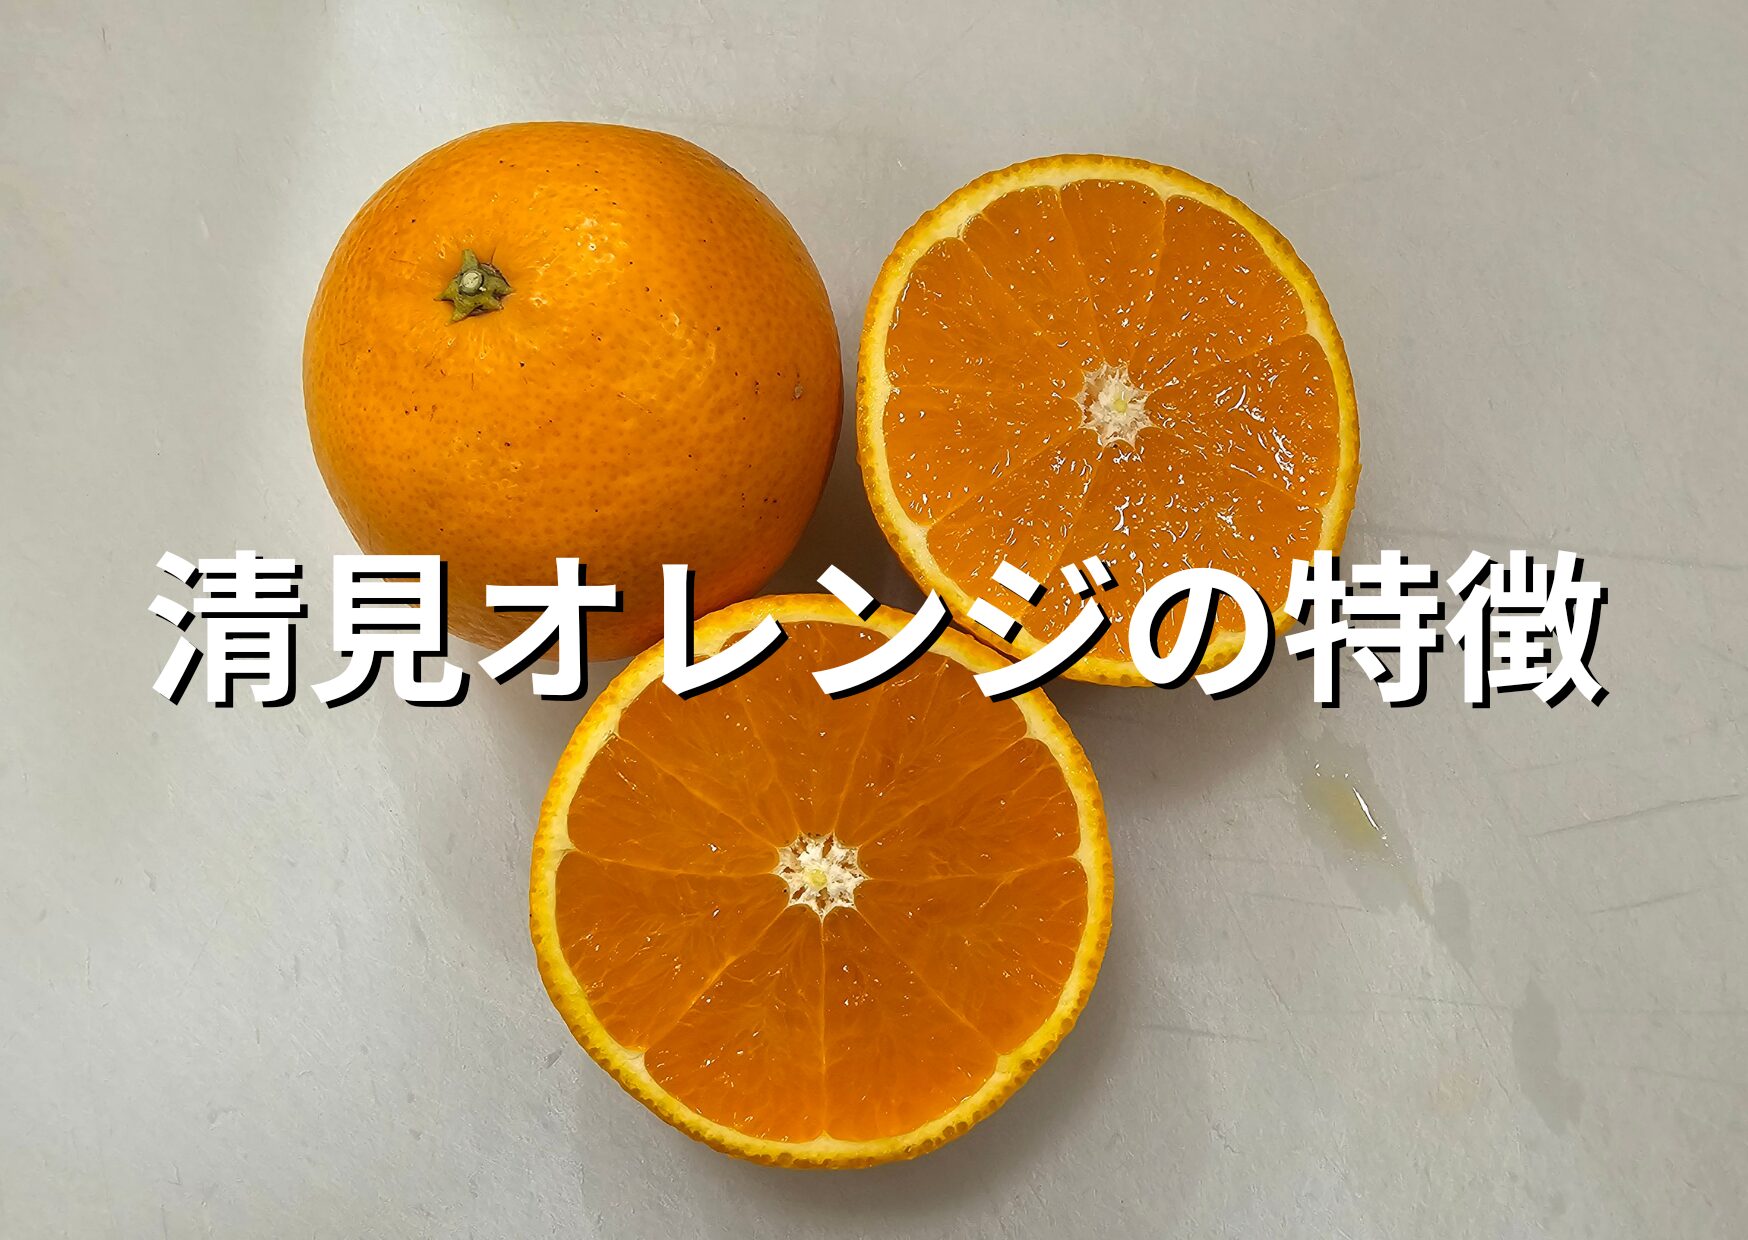 清見オレンジの特徴